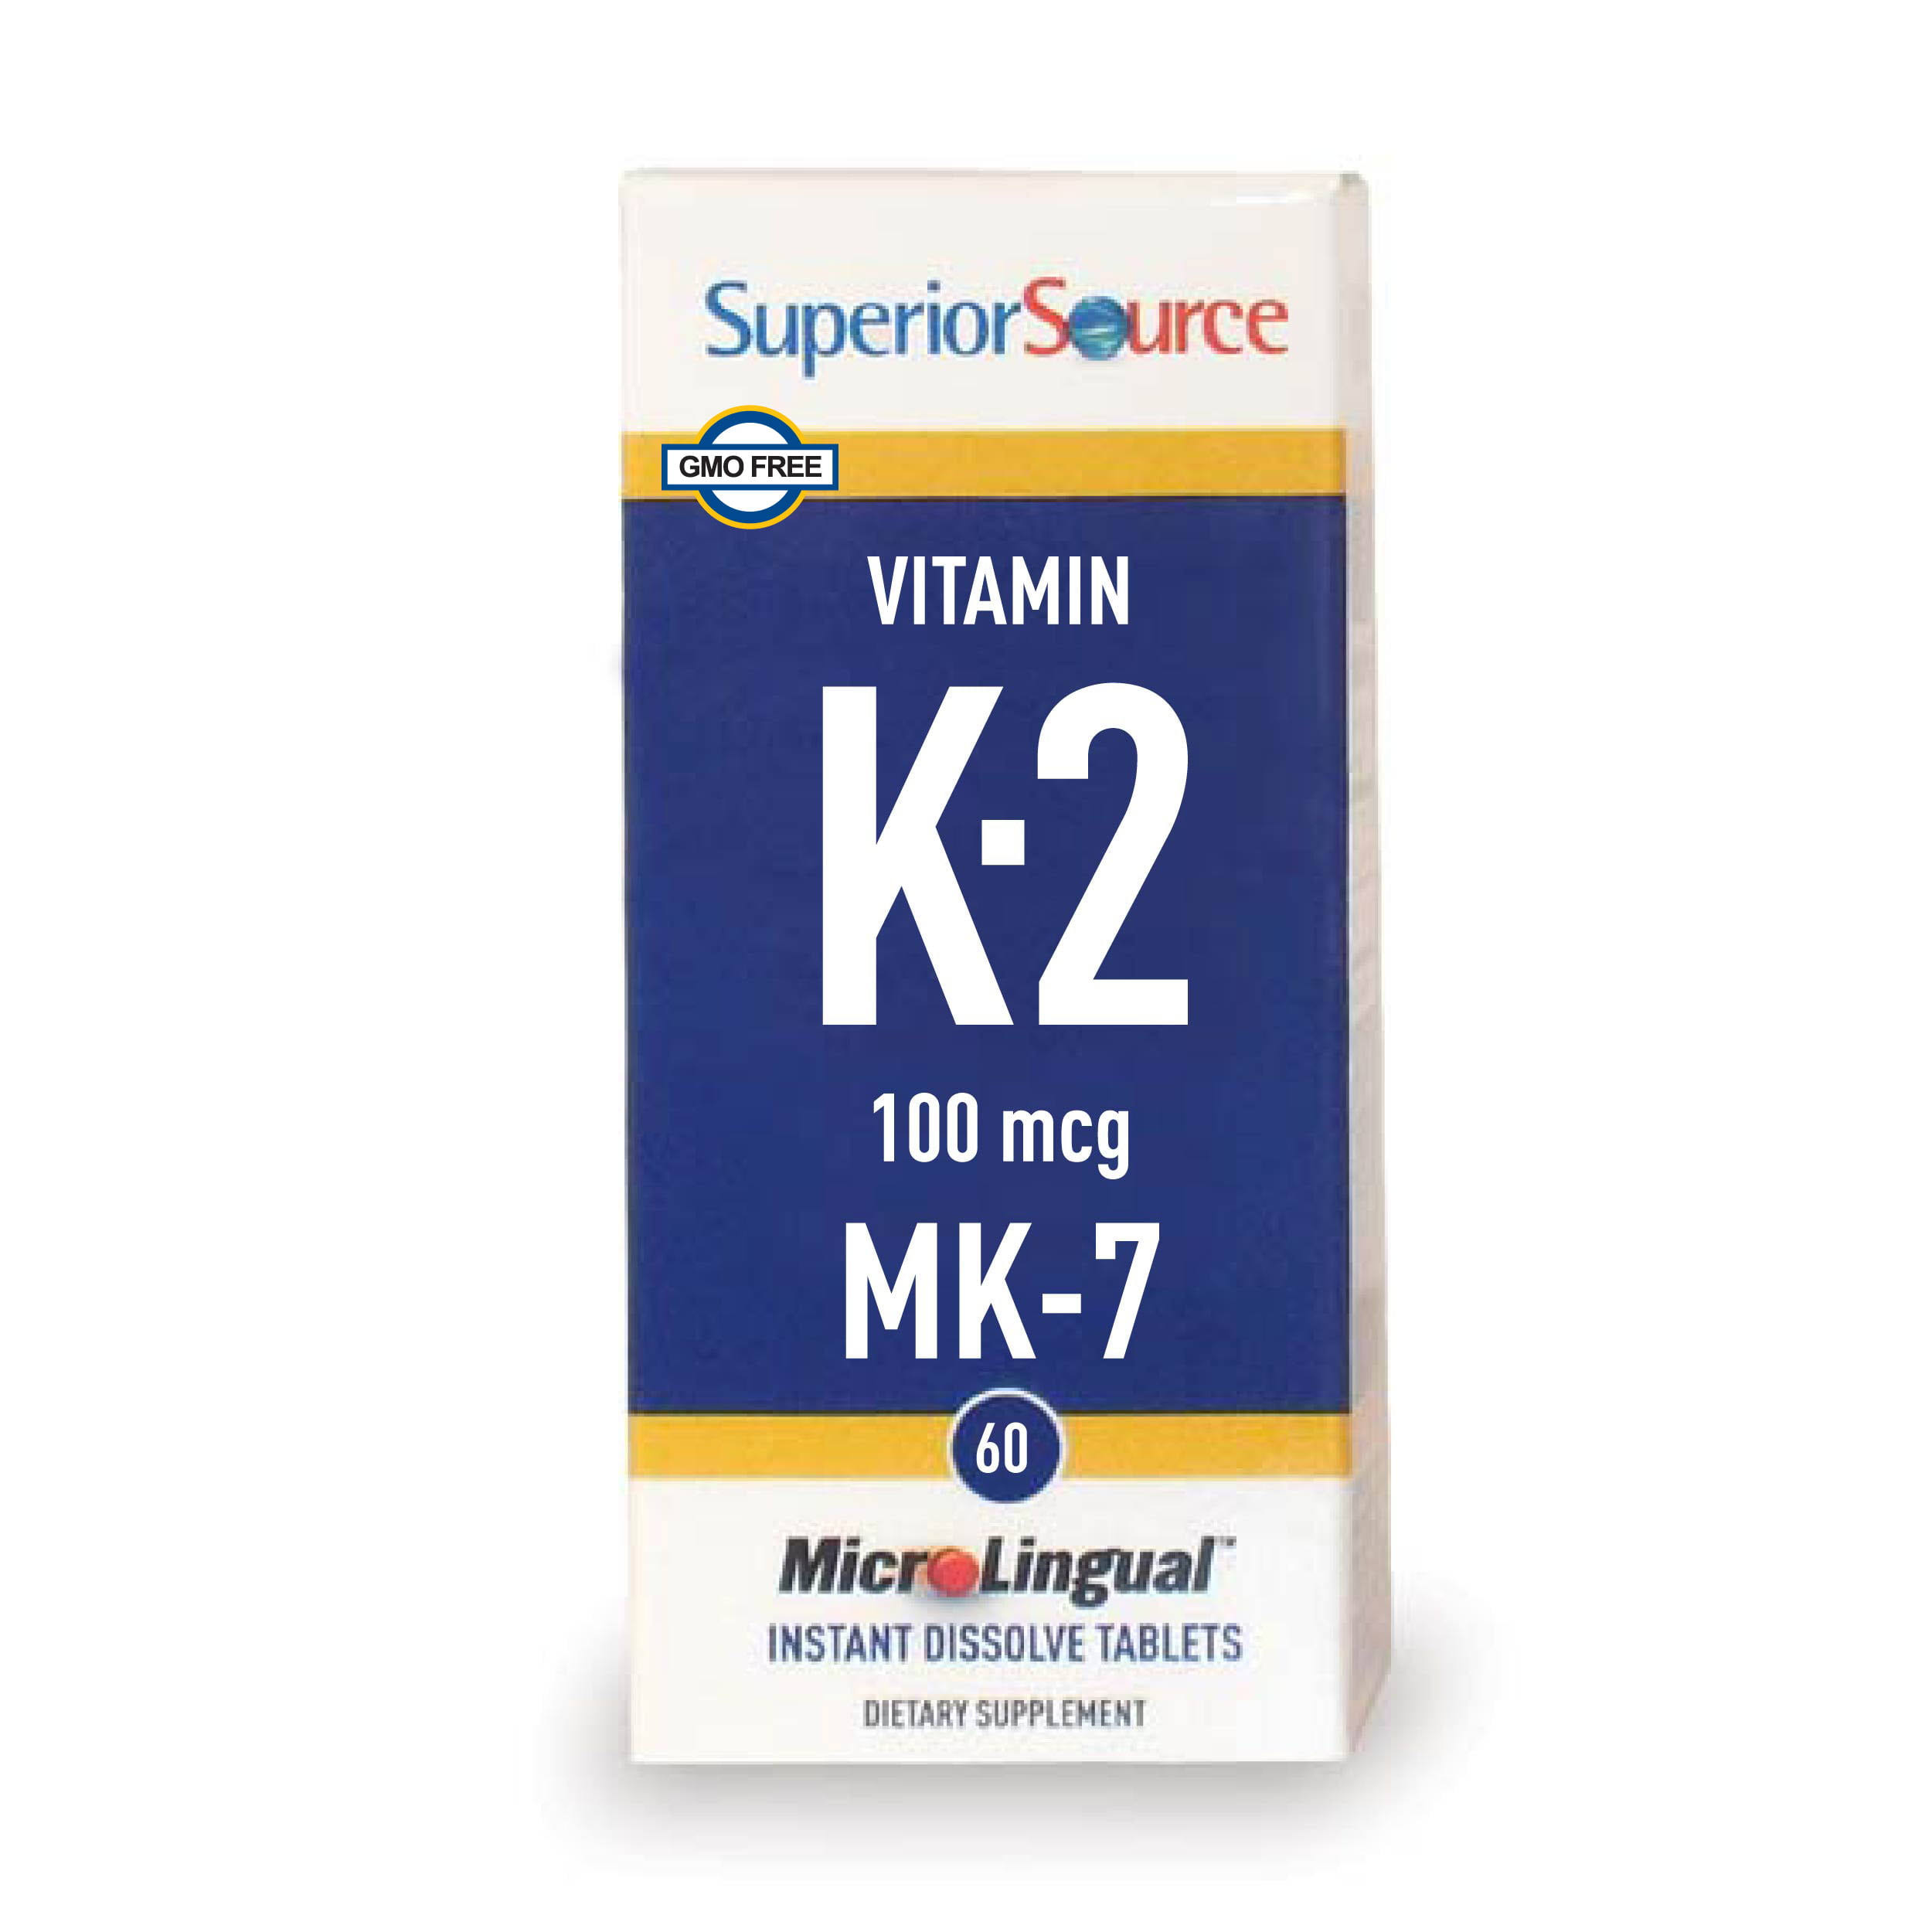 Superior Source Vitamin K2 MK7 Dietary Supplement - 100mcg, 60ct